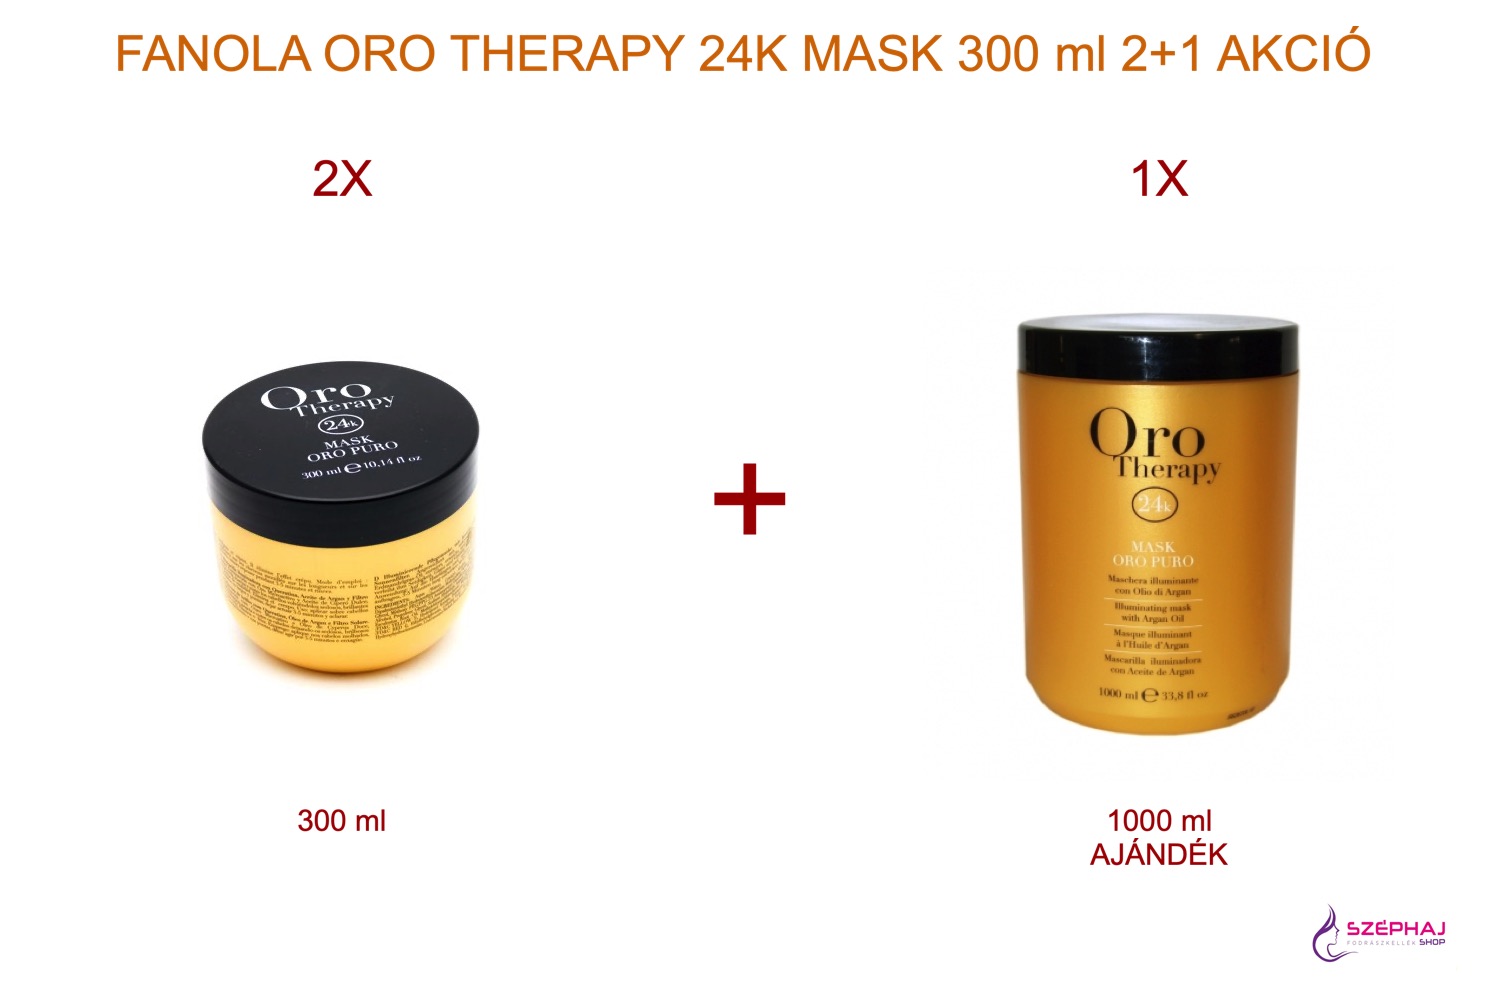 FANOLA ORO Therapy  Mask 300 ml 2+1 AKCIÓ